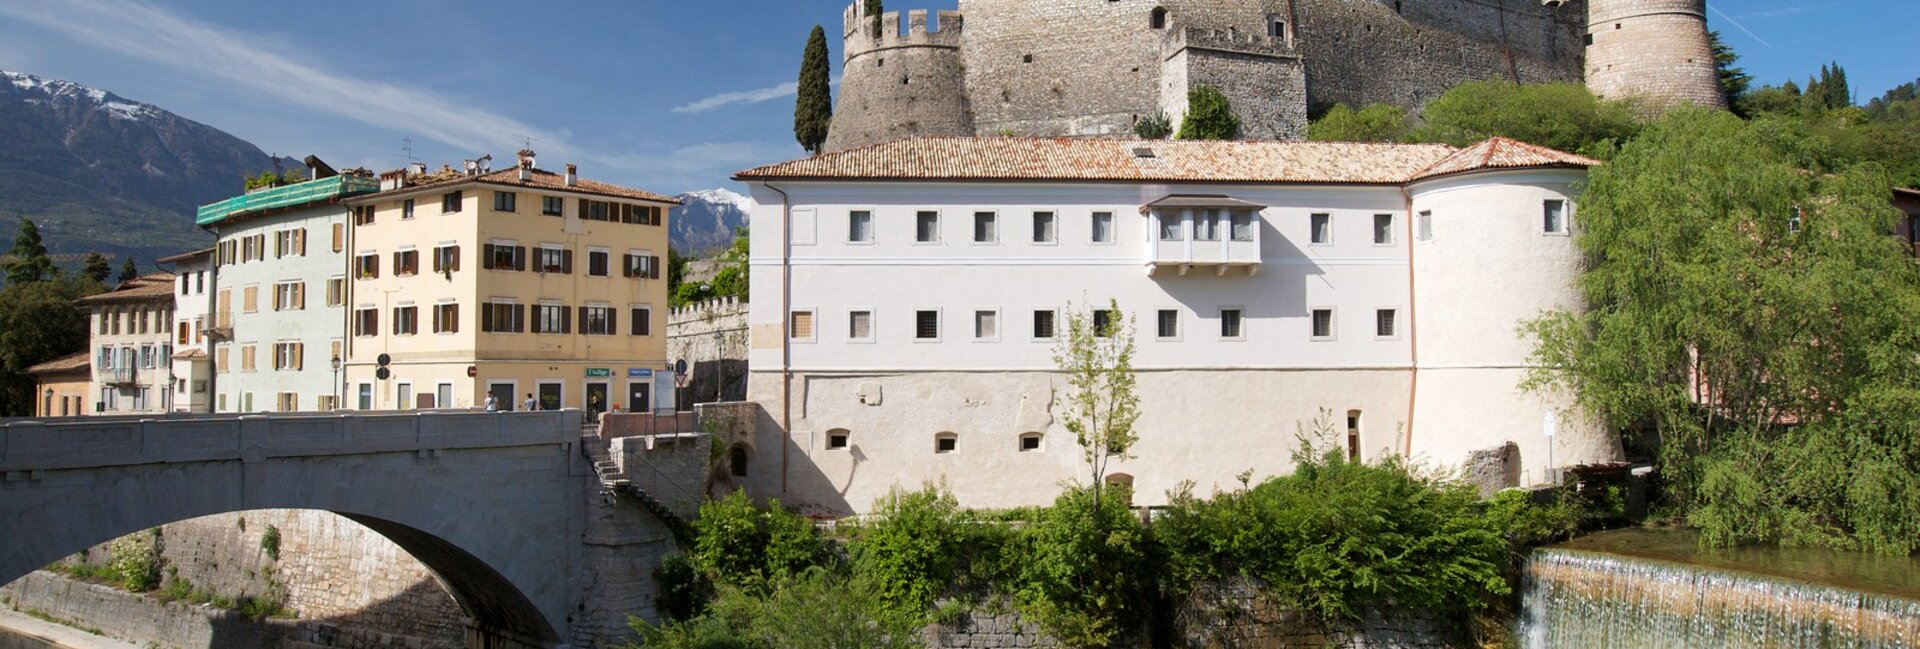 Castello di Rovereto